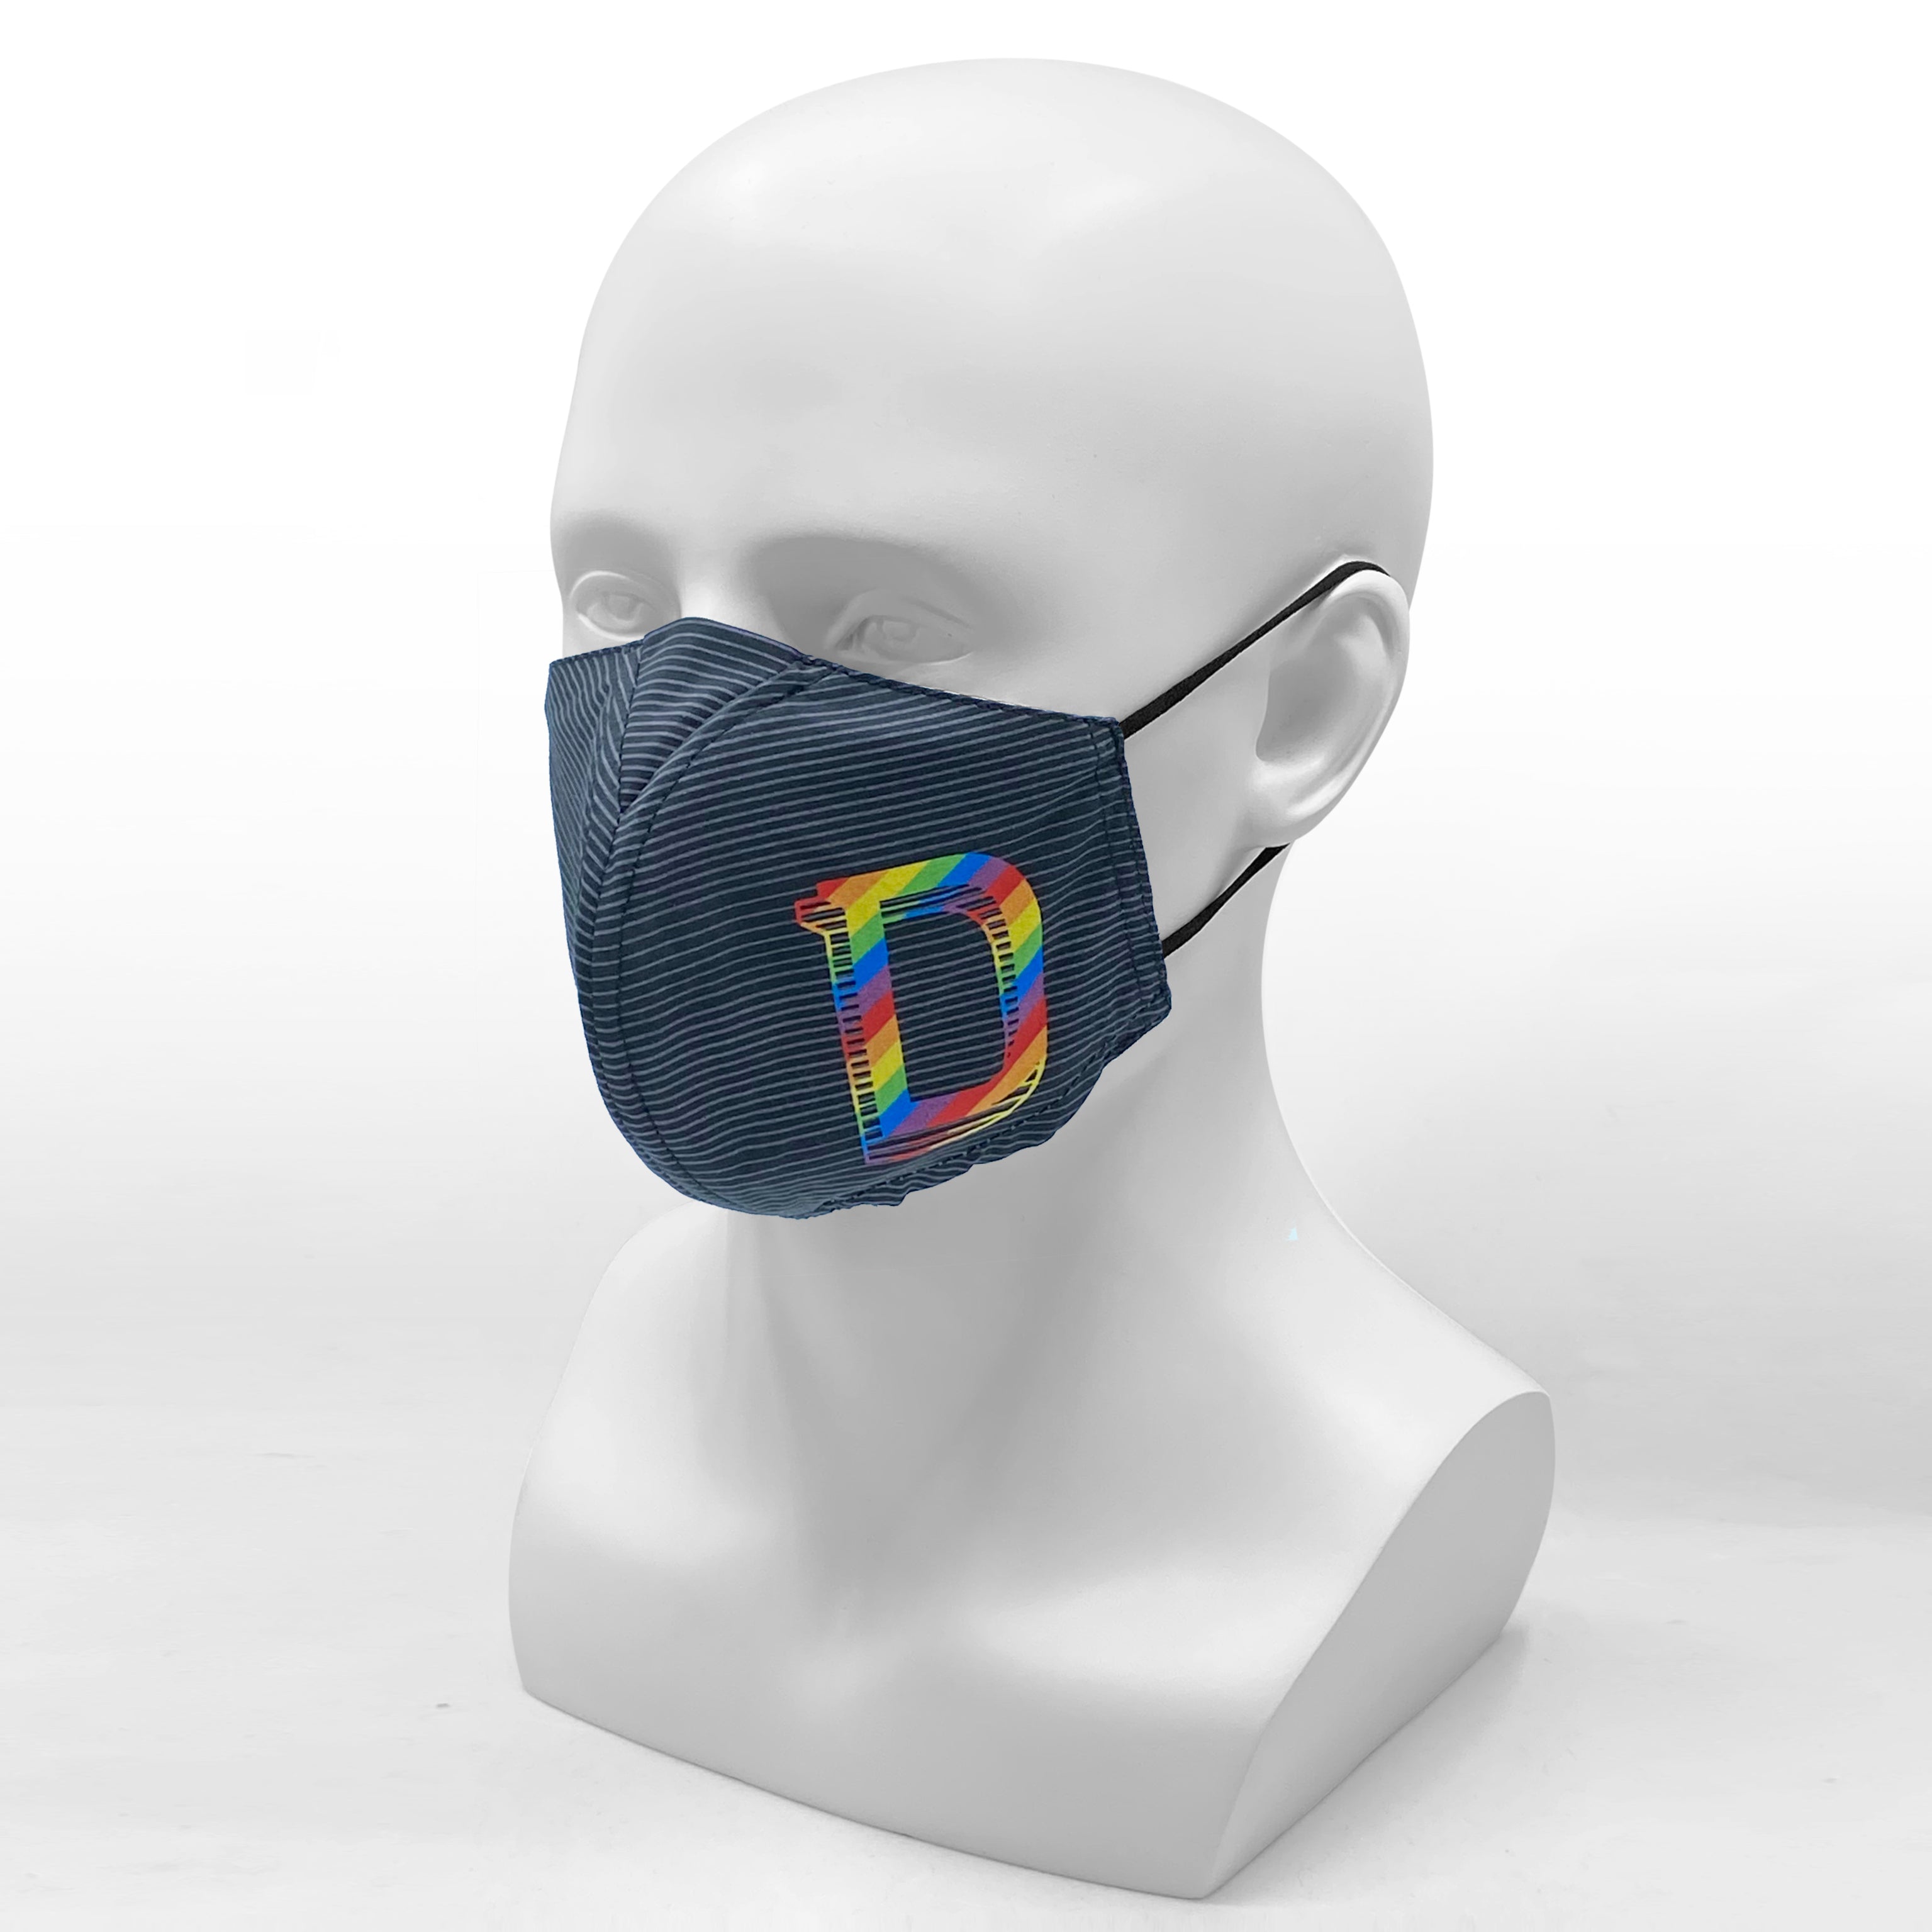 Design Trust Why-Y Fabric Mask, Black/Grey